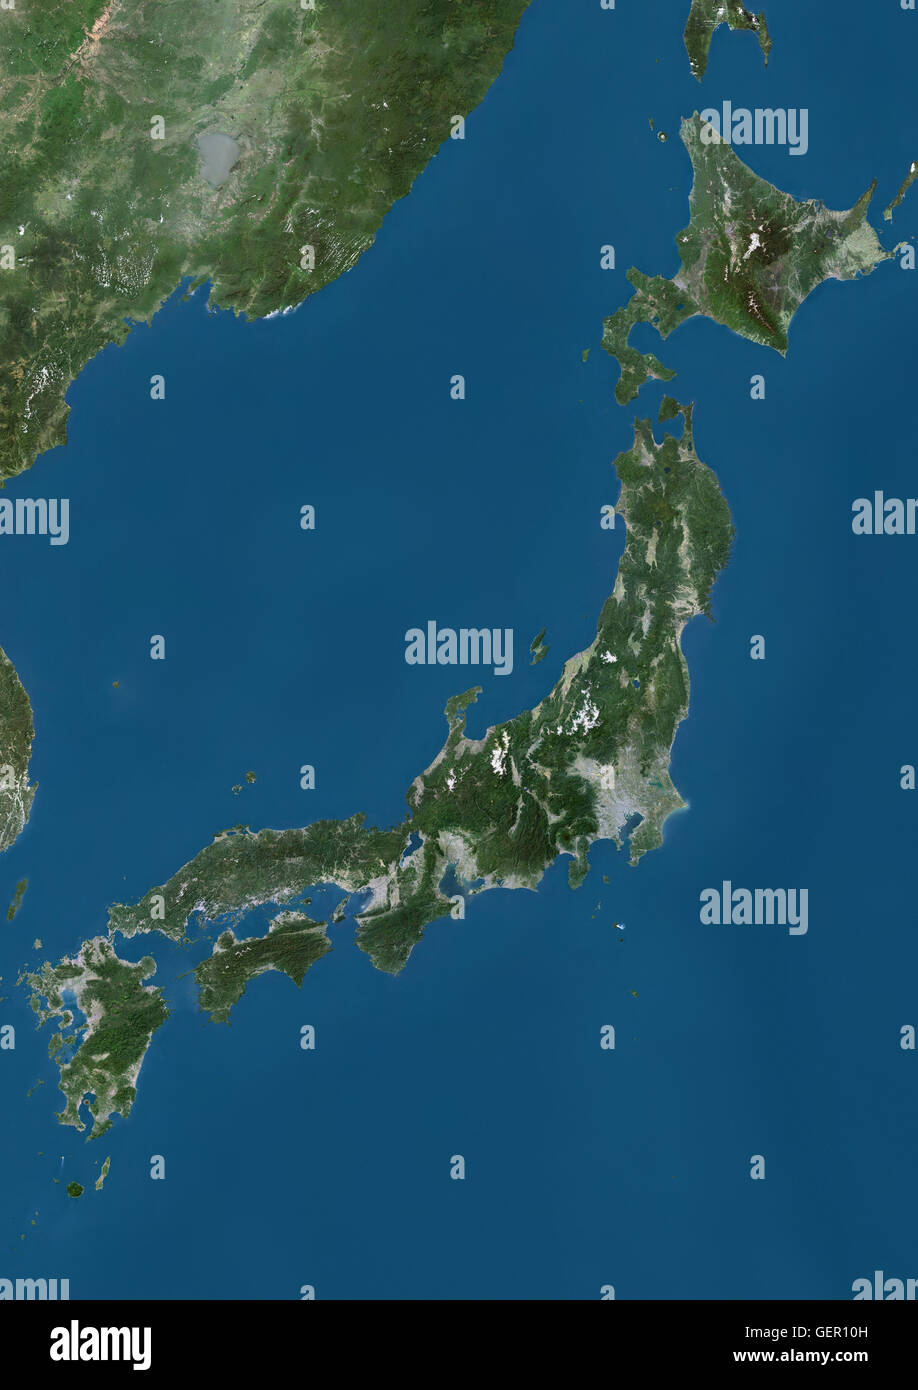 Satellitenansicht von Japan. Dieses Bild wurde aus Daten von Landsat-Satelliten erworben erstellt. Stockfoto